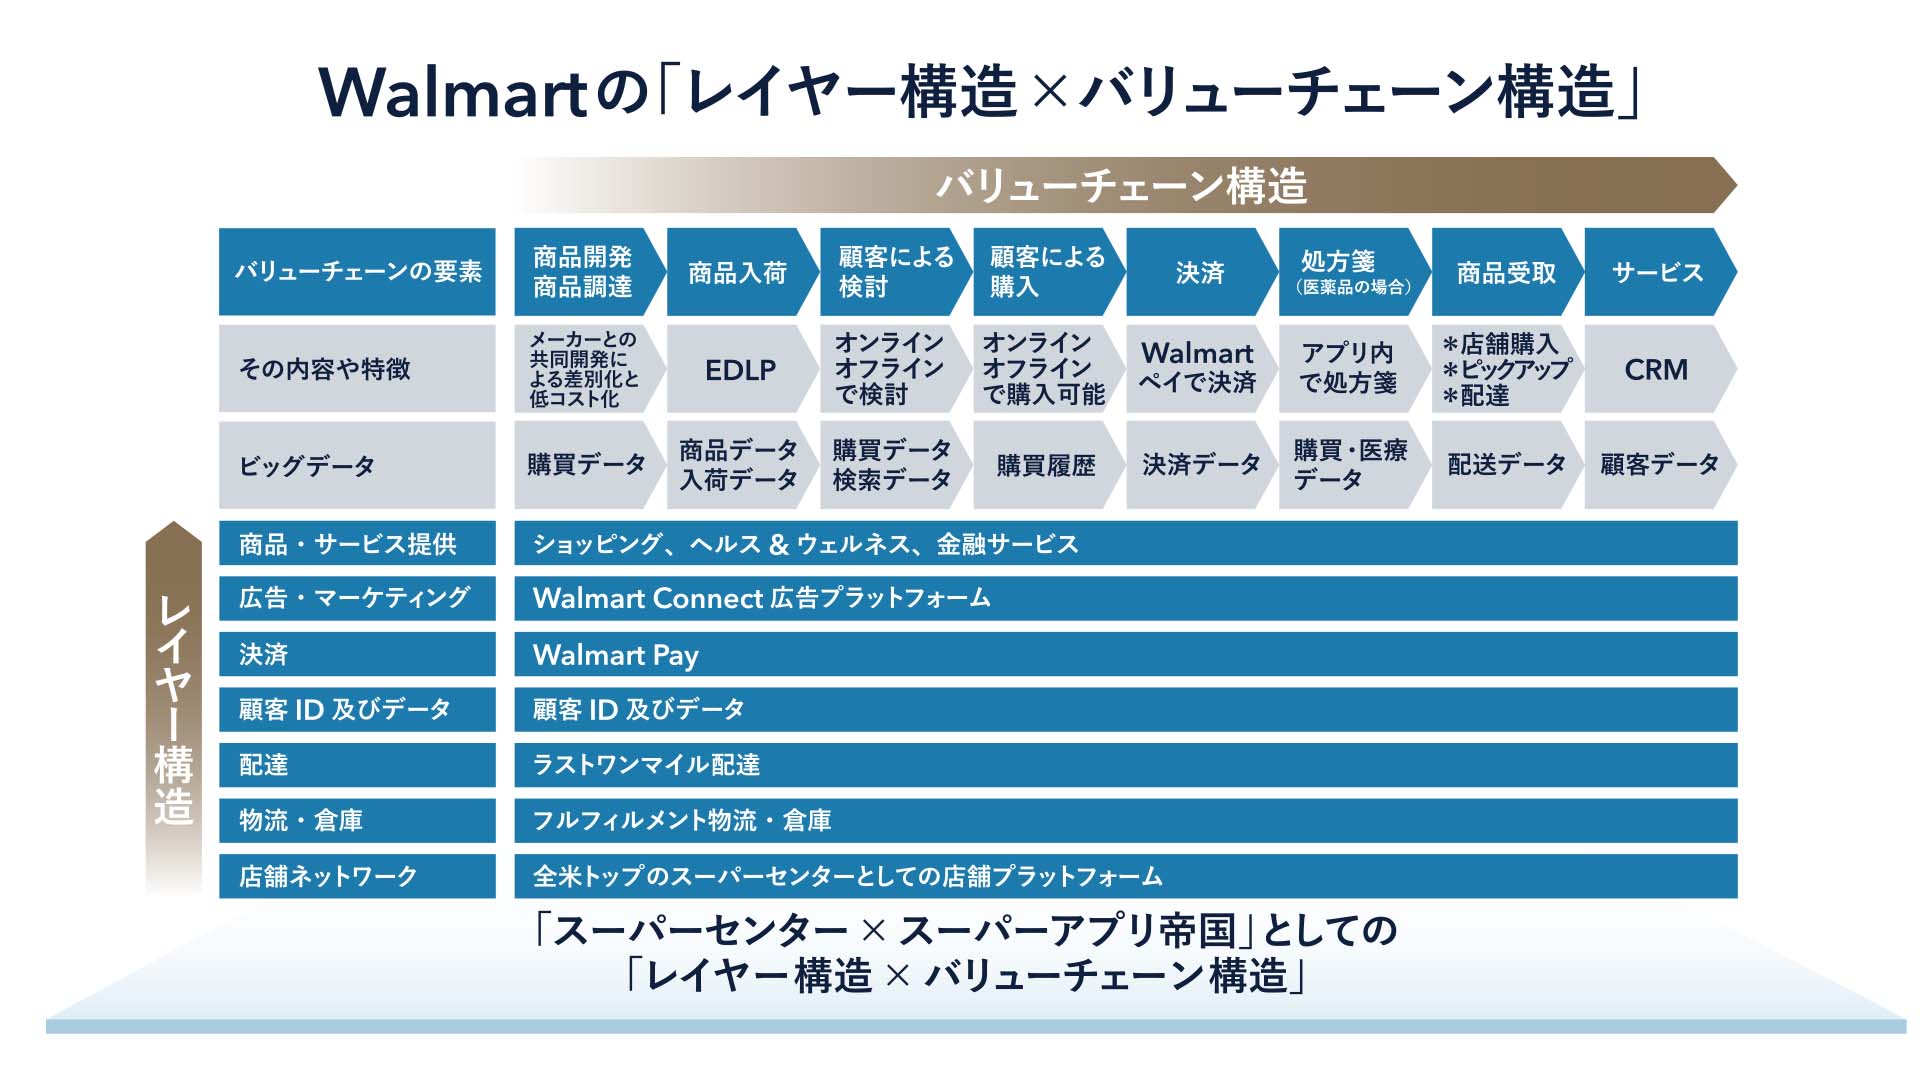 世界最大の小売業」ウォルマートのデジタルトランスフォーメーションと日本企業への示唆 | コラム | Ridgelinez (リッジラインズ)株式会社  | DXコンサルティング